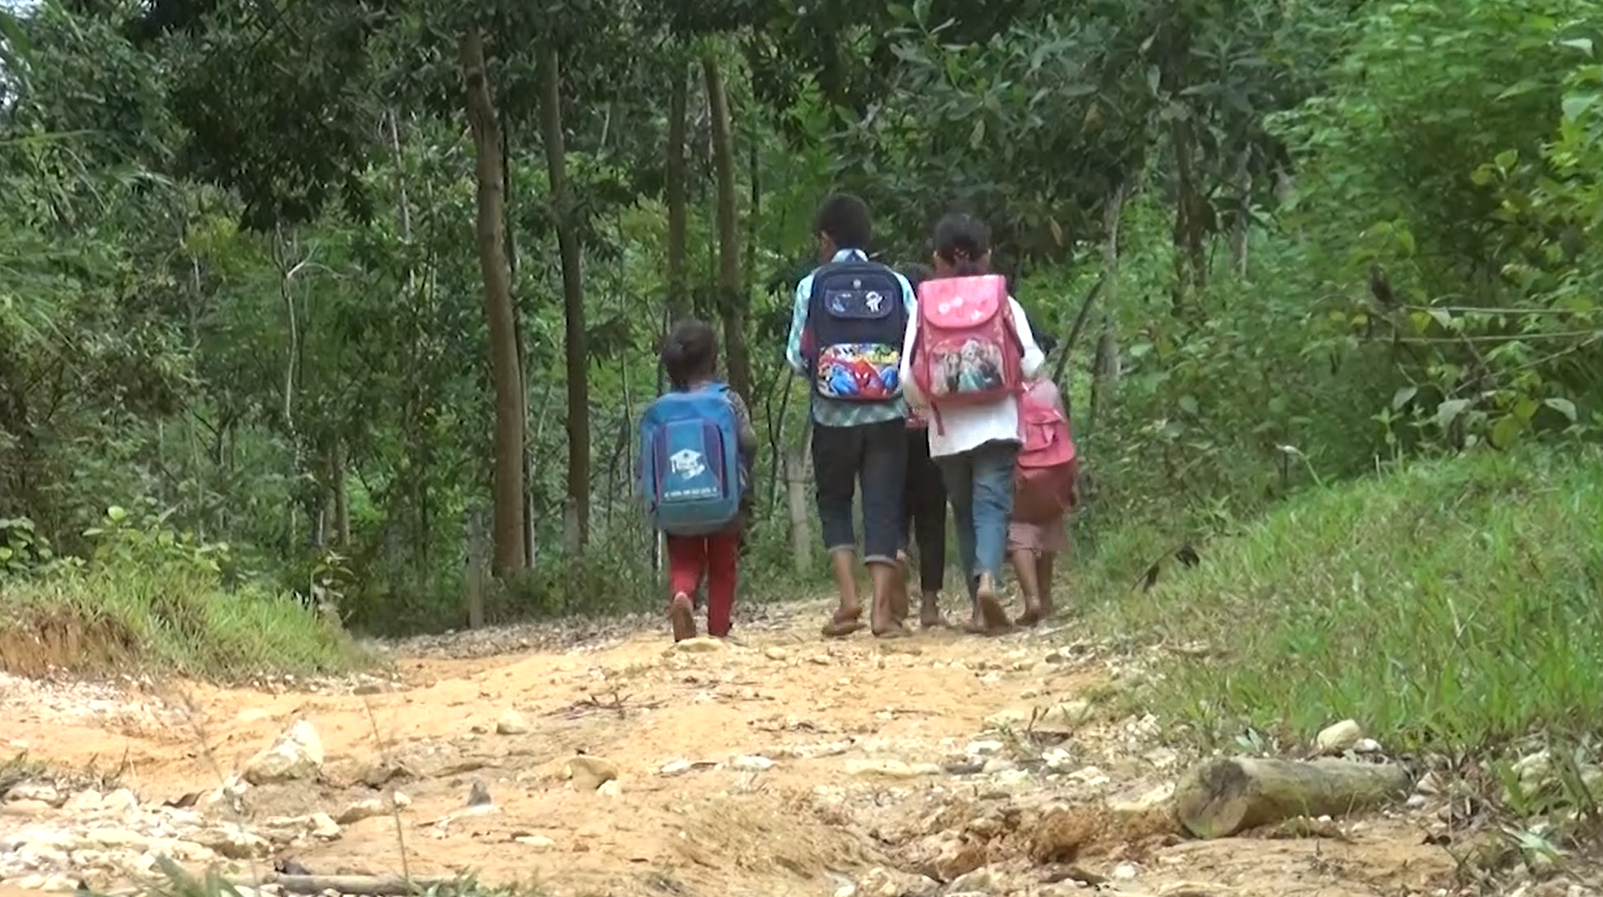 Hằng ngày, cả 5 em là Định, Phương, Sơn, Thủy, Ngân phải đi bộ 5 kilomet đường rừng gập ghềnh sỏi đá để tới trường. Dù đi đường vất vả, 5 anh chị em vẫn quyết tâm tới trường.